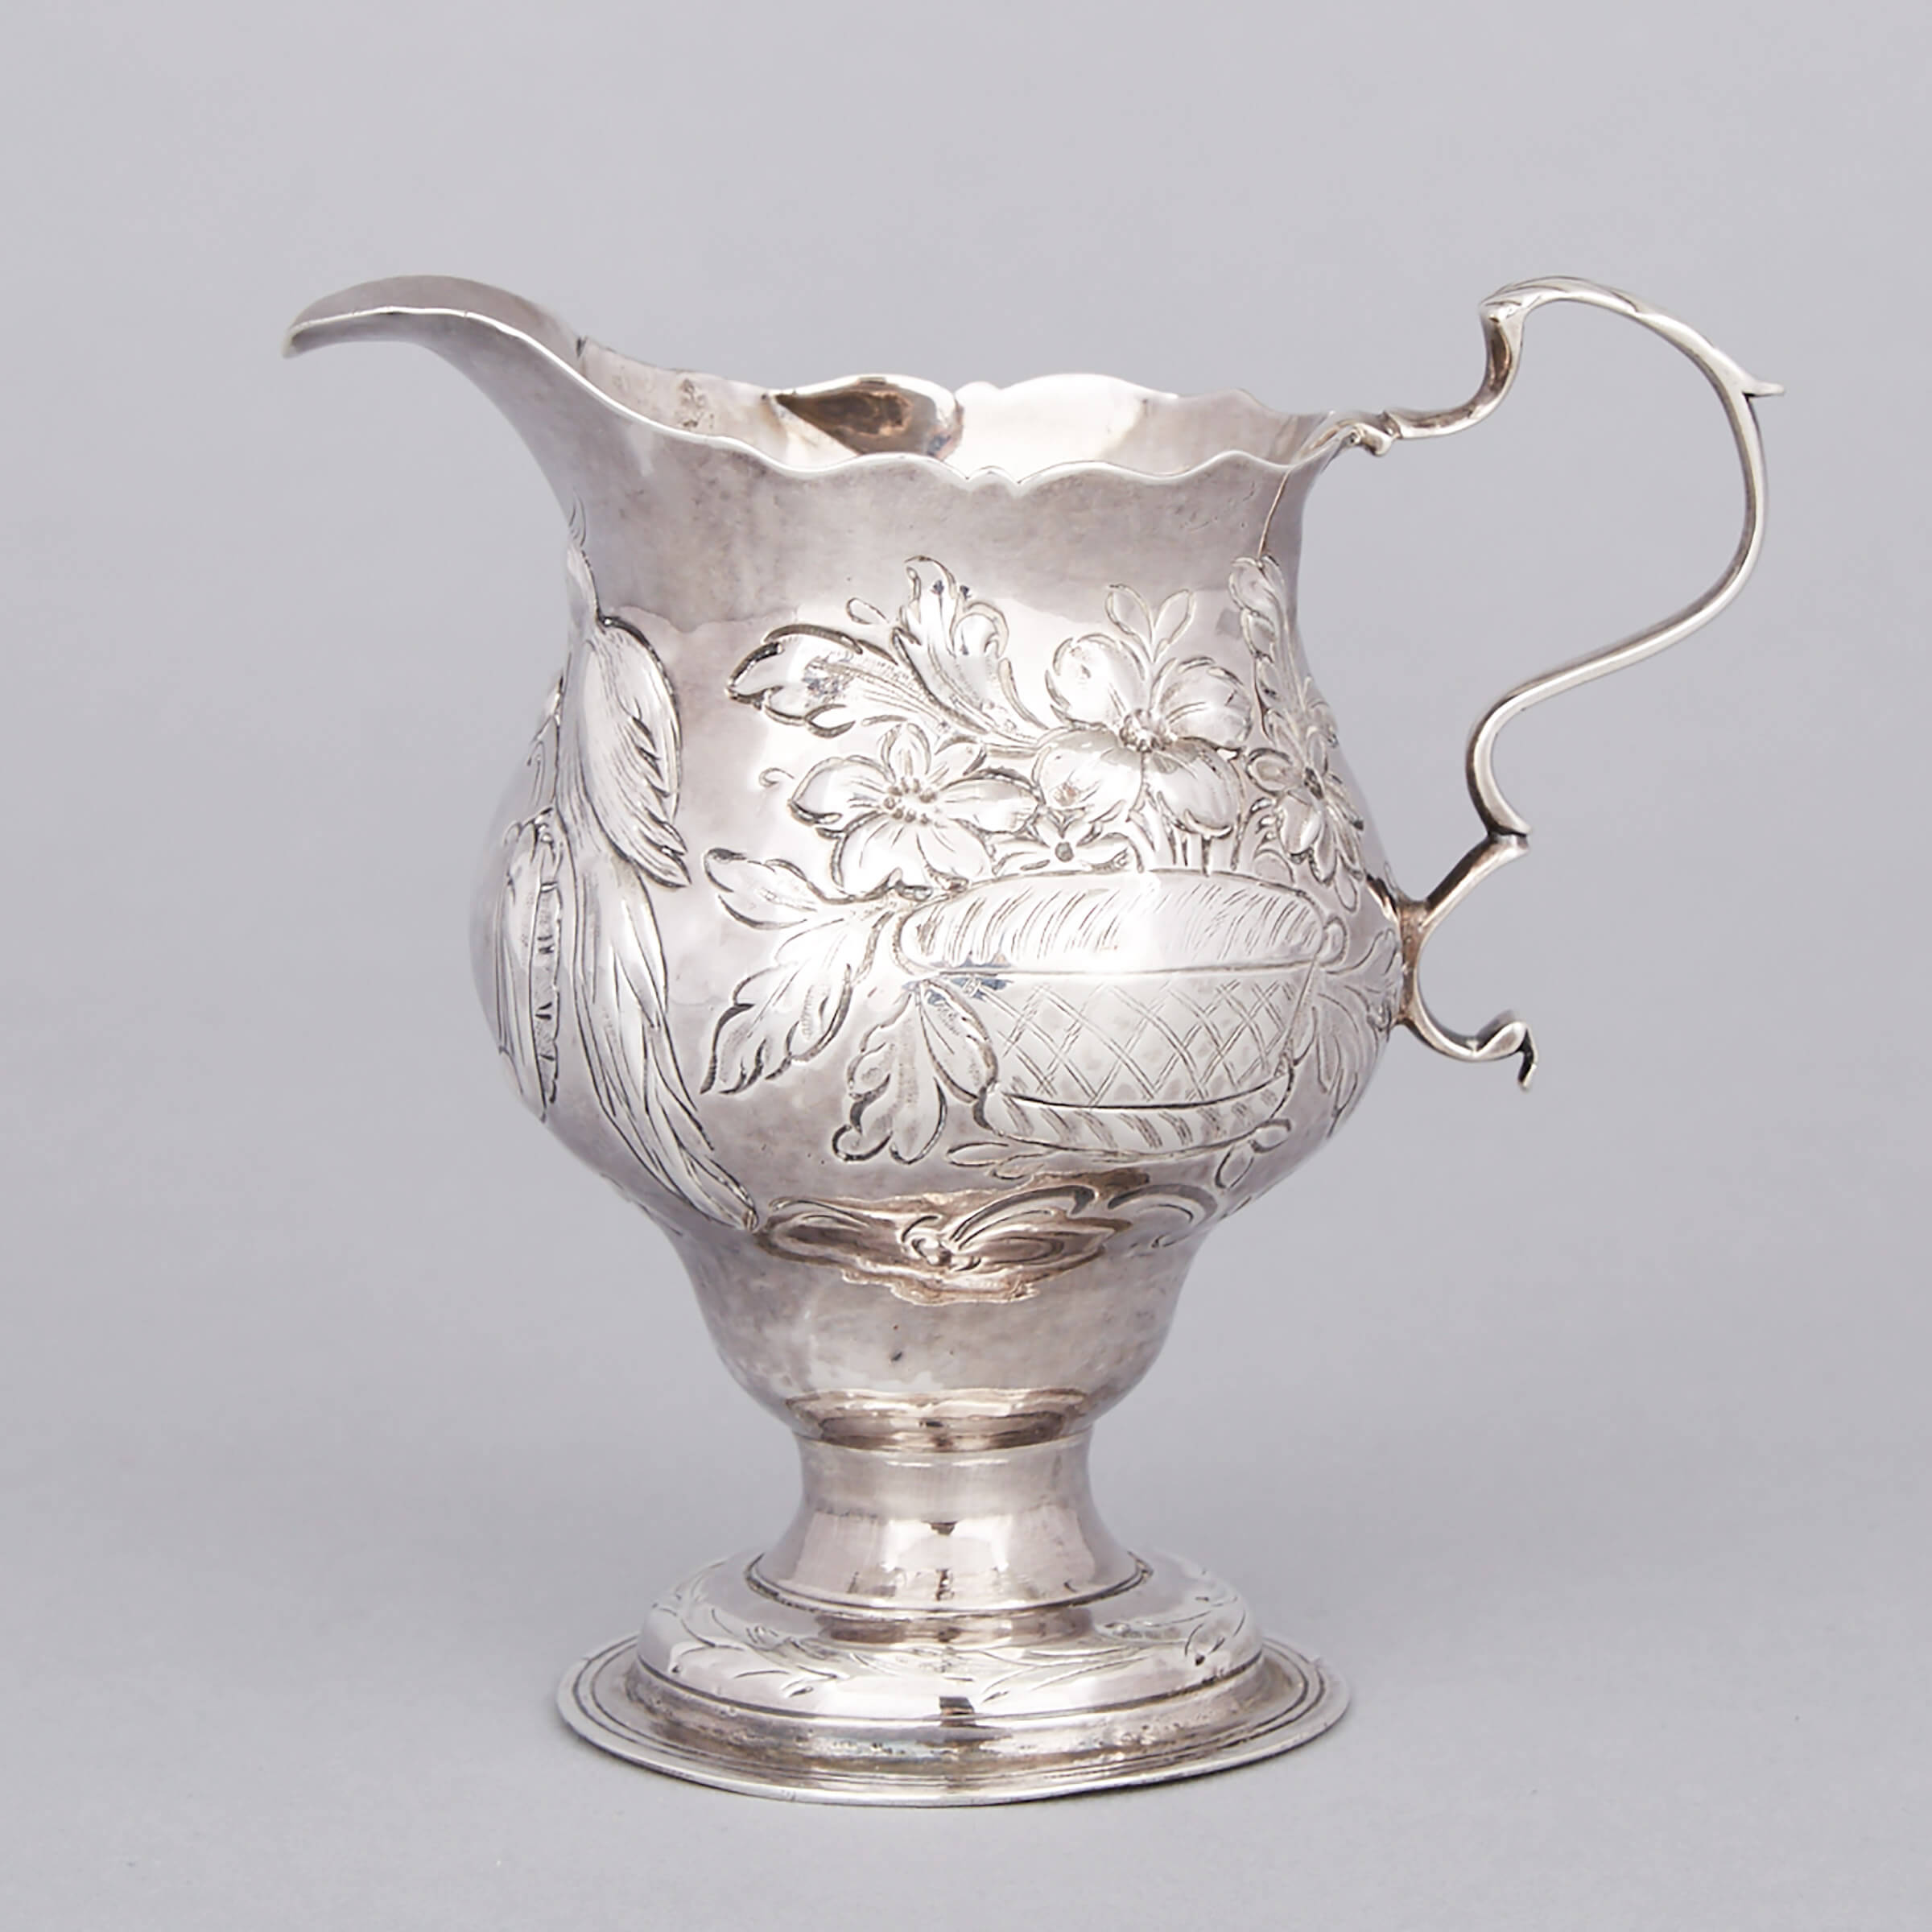 George III Silver Cream Jug, Elizabeth Muns, London, 1768